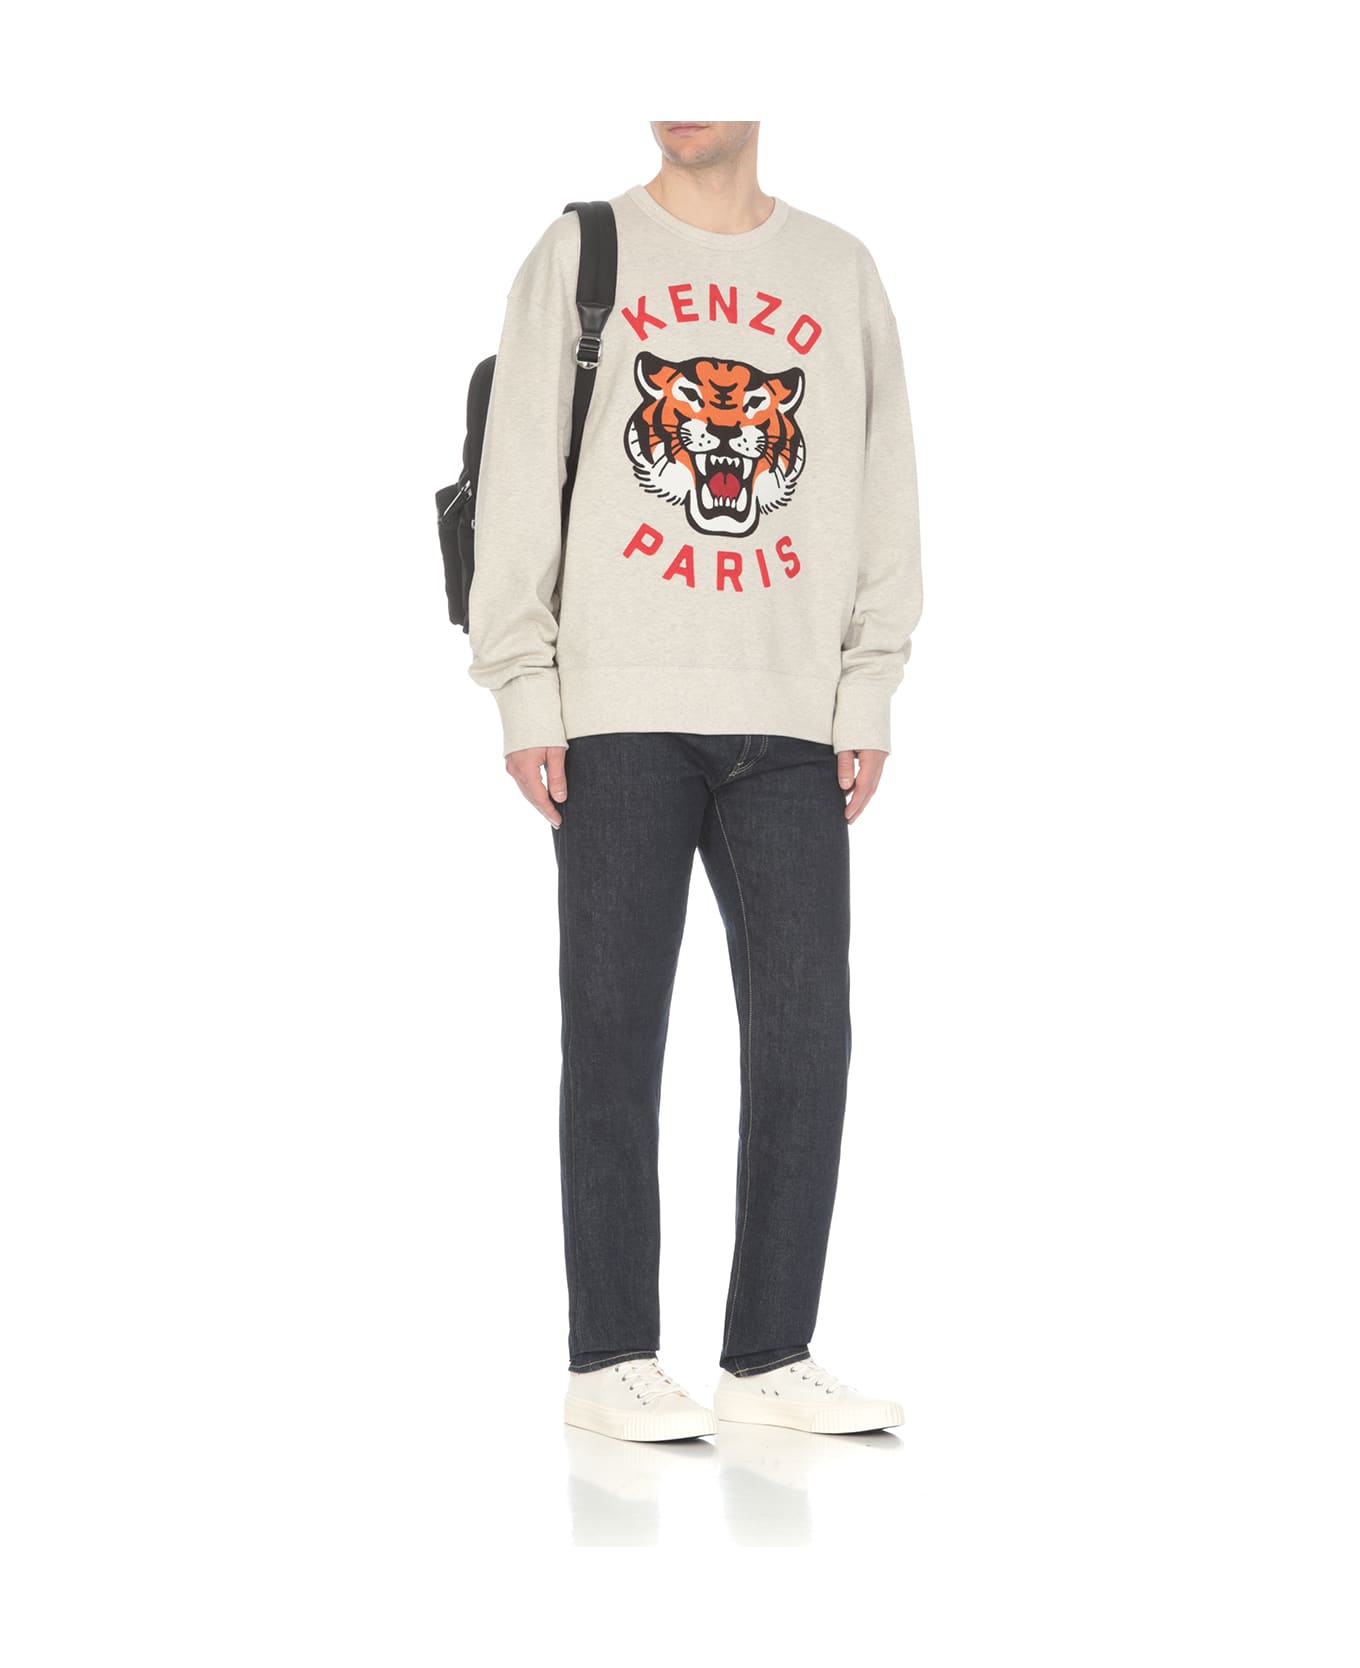 Kenzo Lucky Tiger Sweatshirt - Grey